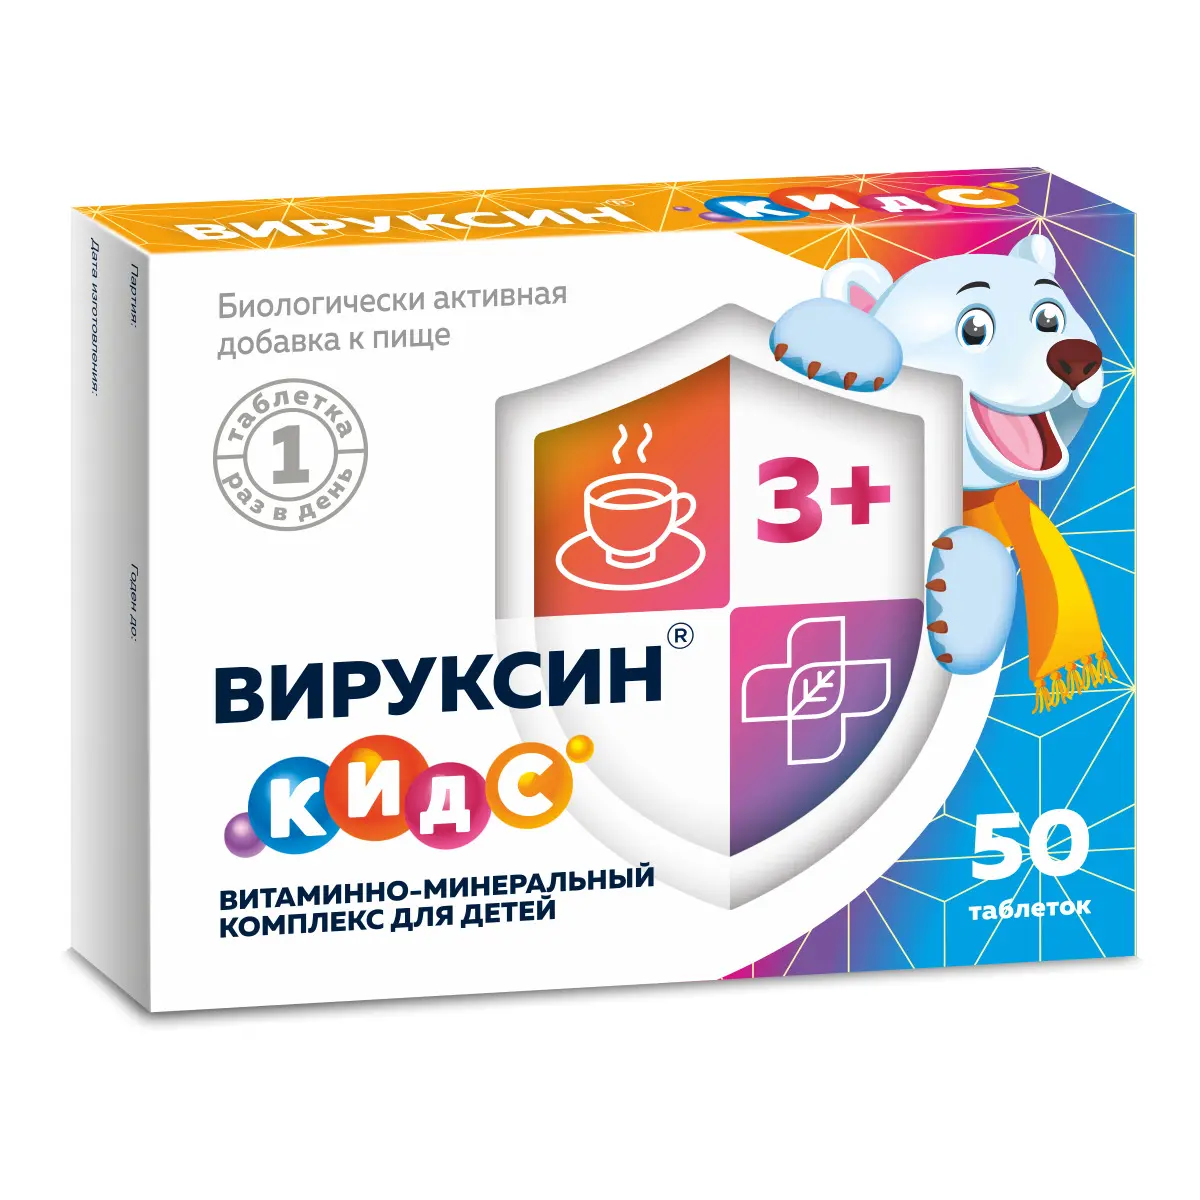 ВИРУКСИН КИДС Витаминно-минеральный комплекс для детей табл. N50 (ЭВАЛАР, РФ)